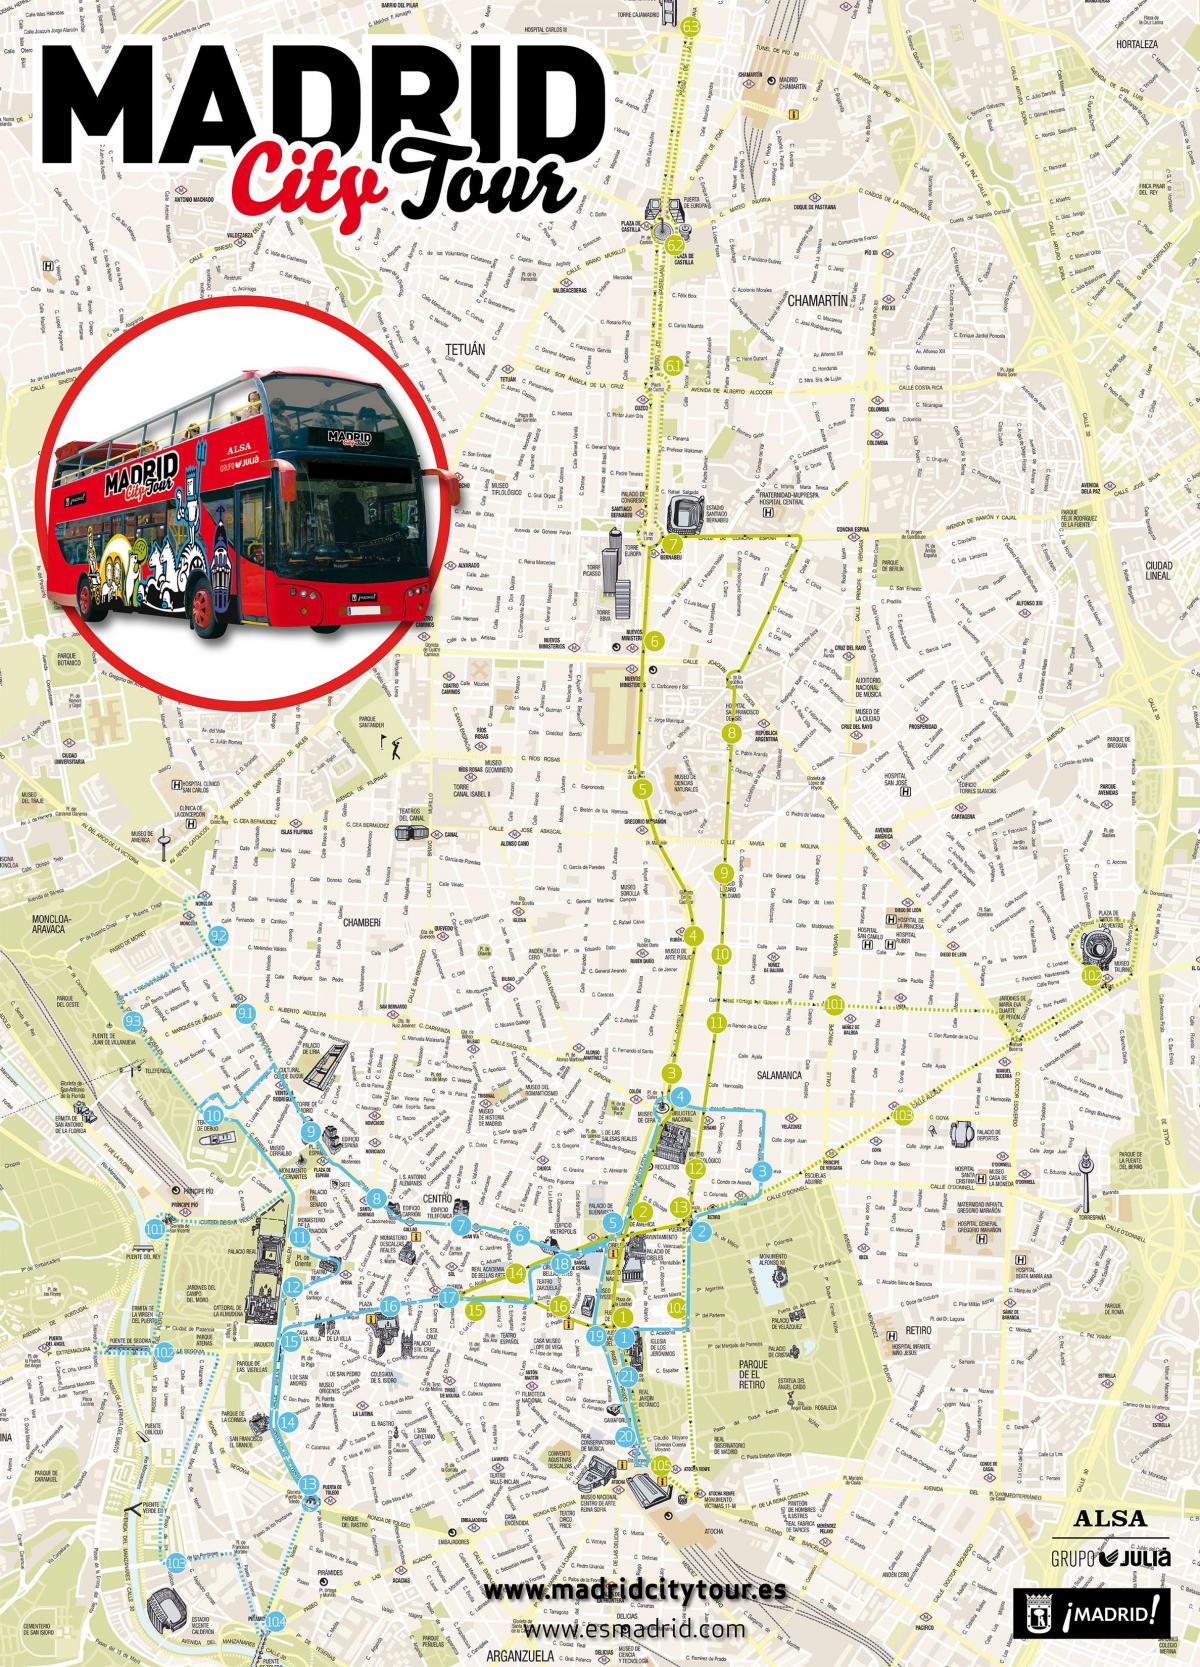 Мадрид оглядова автобусна карті